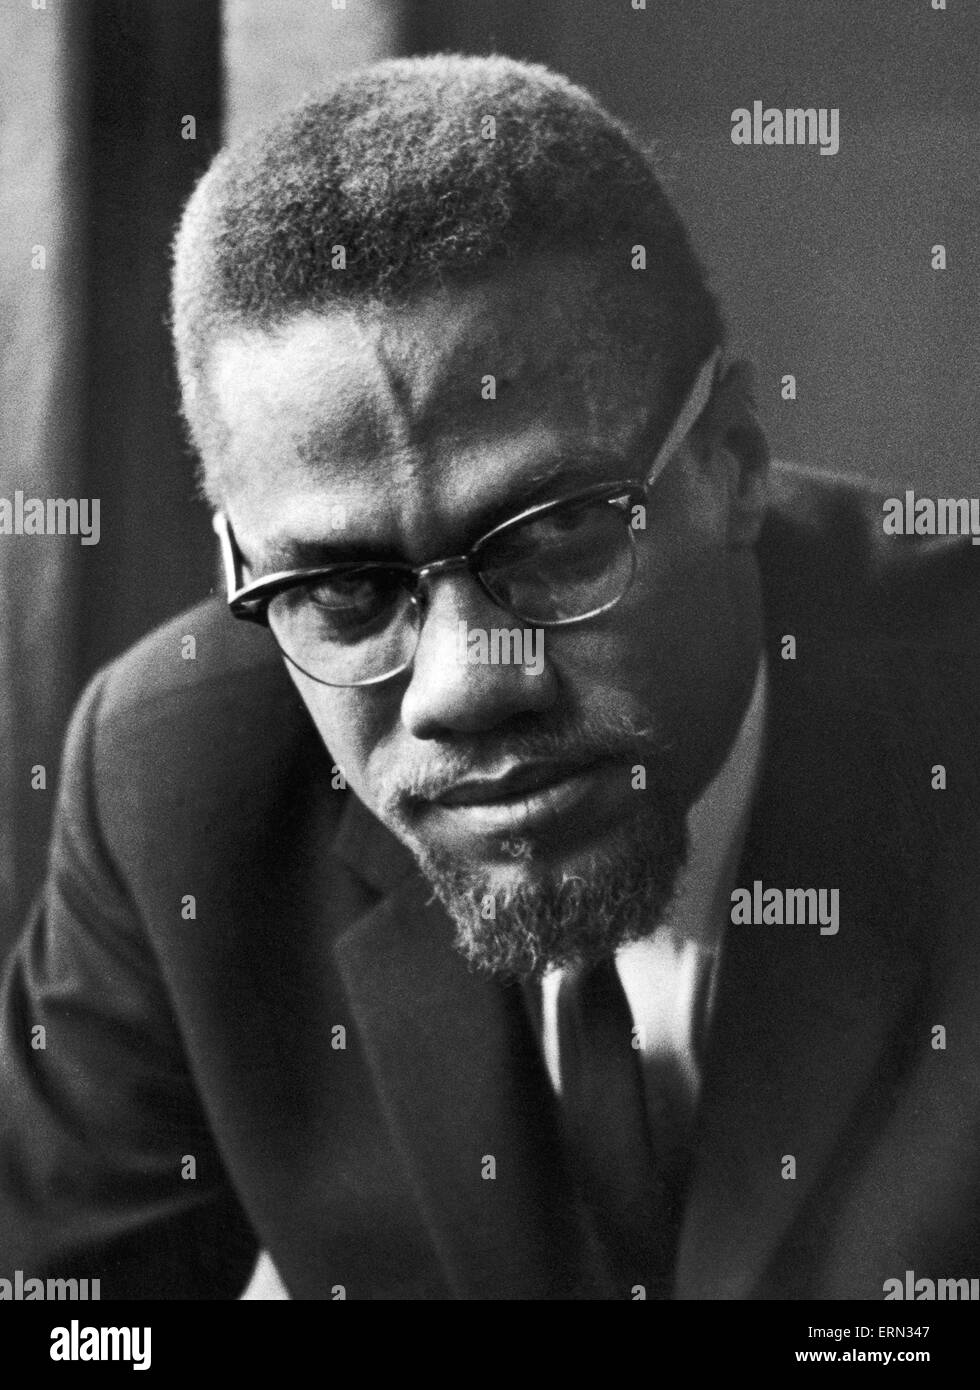 Malcolm X musulmani afro-americano ministro e attivista per i diritti umani si vede qui poco dopo la sua visita a Marshall Street in Smethwick. L'attivista per i diritti umani ha visitato Smethwick, vicino a Birmingham, che era diventato un sinonimo per la divisione razziale seguenti Foto Stock